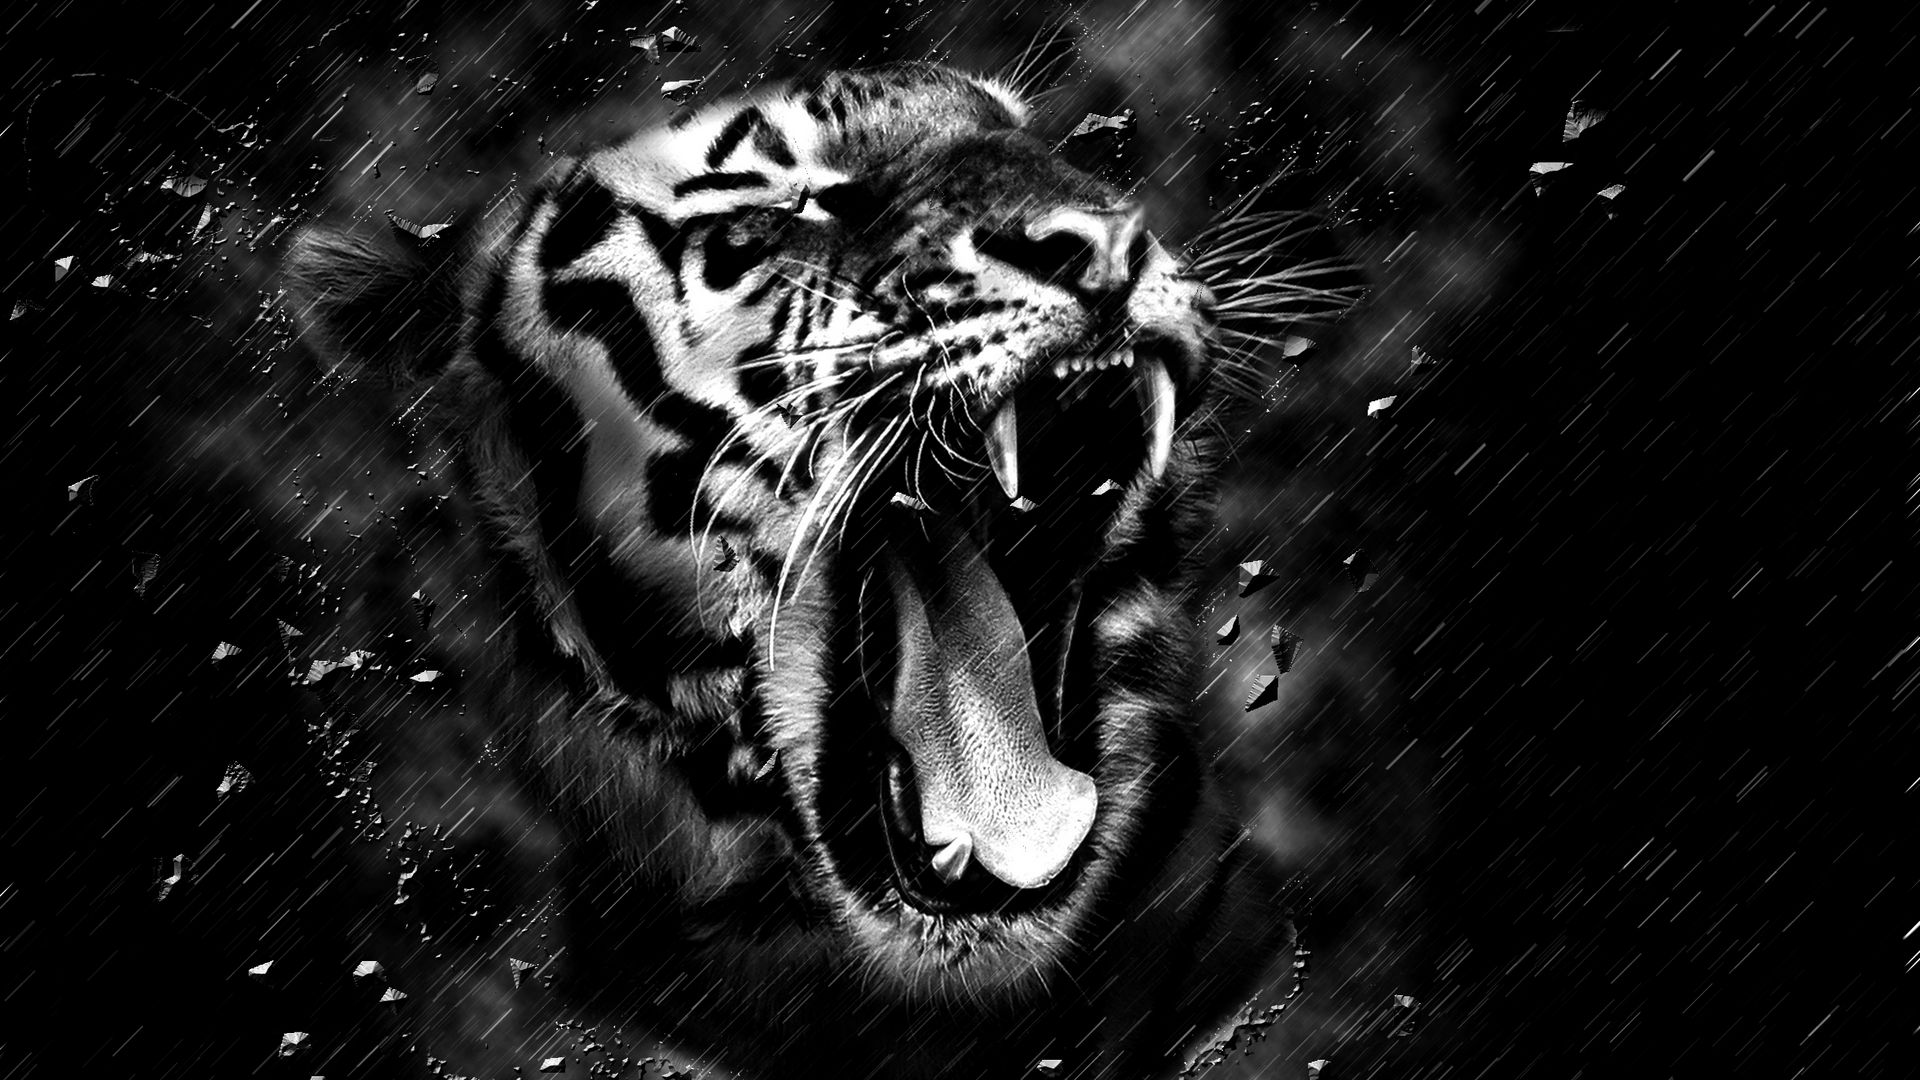 fond d'écran 1920x1080 hd 1080p,tigre du bengale,noir,rugir,noir et blanc,faune